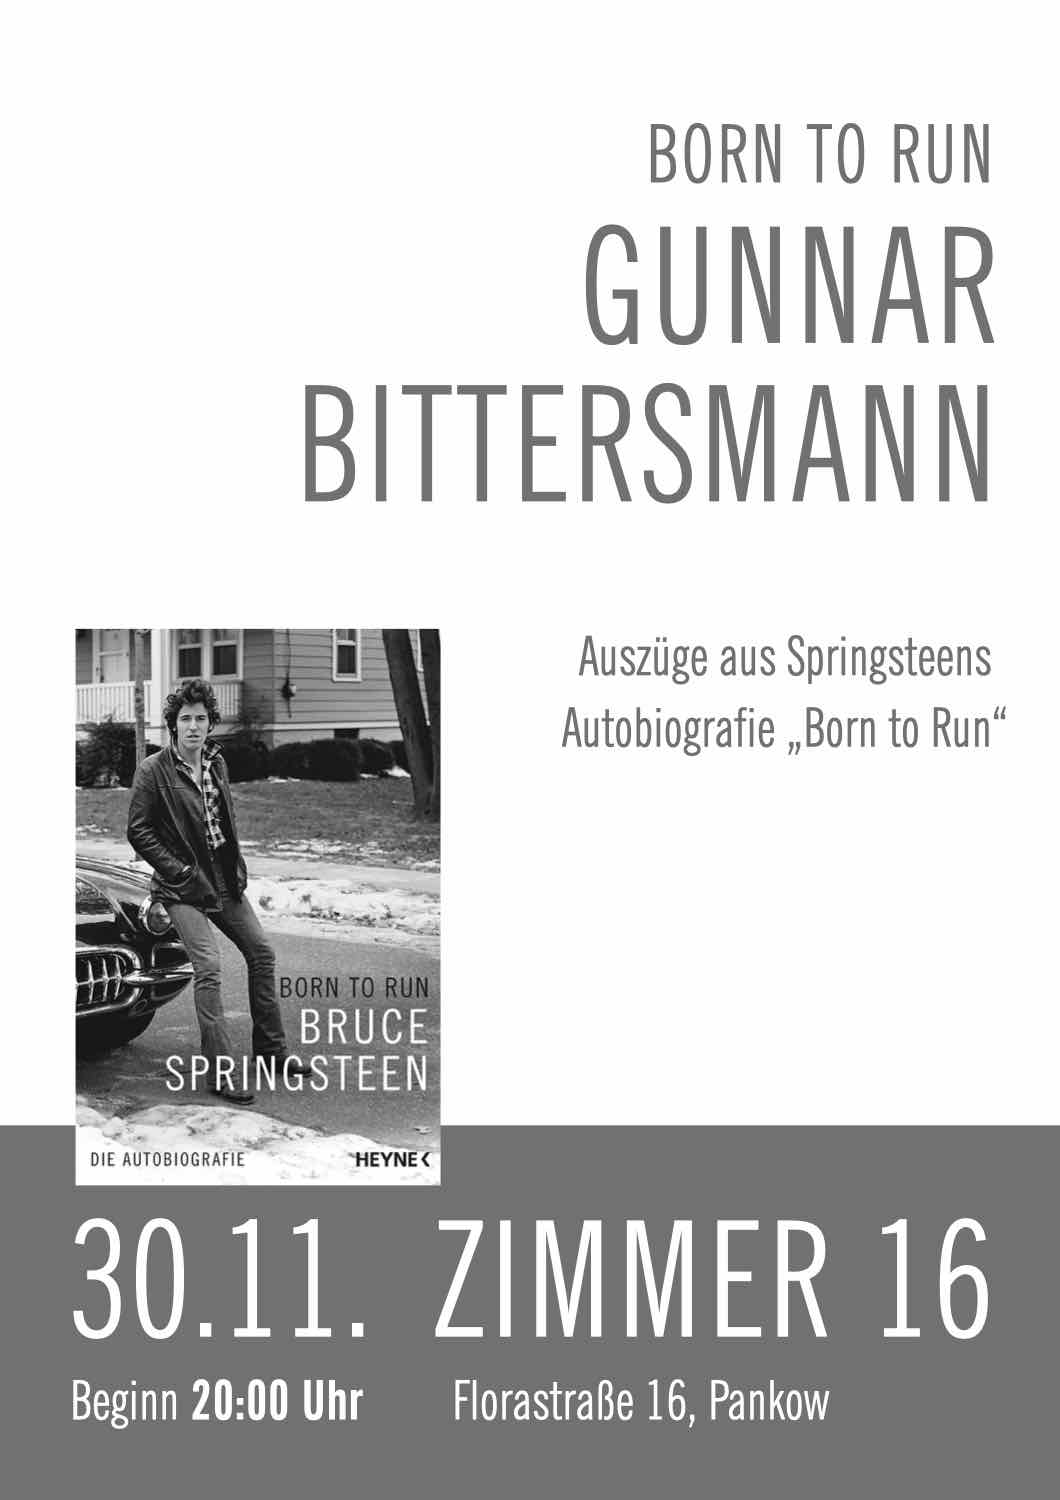 Gunnar Bittersmannn. Auszüge aus Springsteens Autobiografie „Born to Run“. 30.11. Beginn 20:00 Uhr. Zimmer 16, Florastraße 16, Pankow